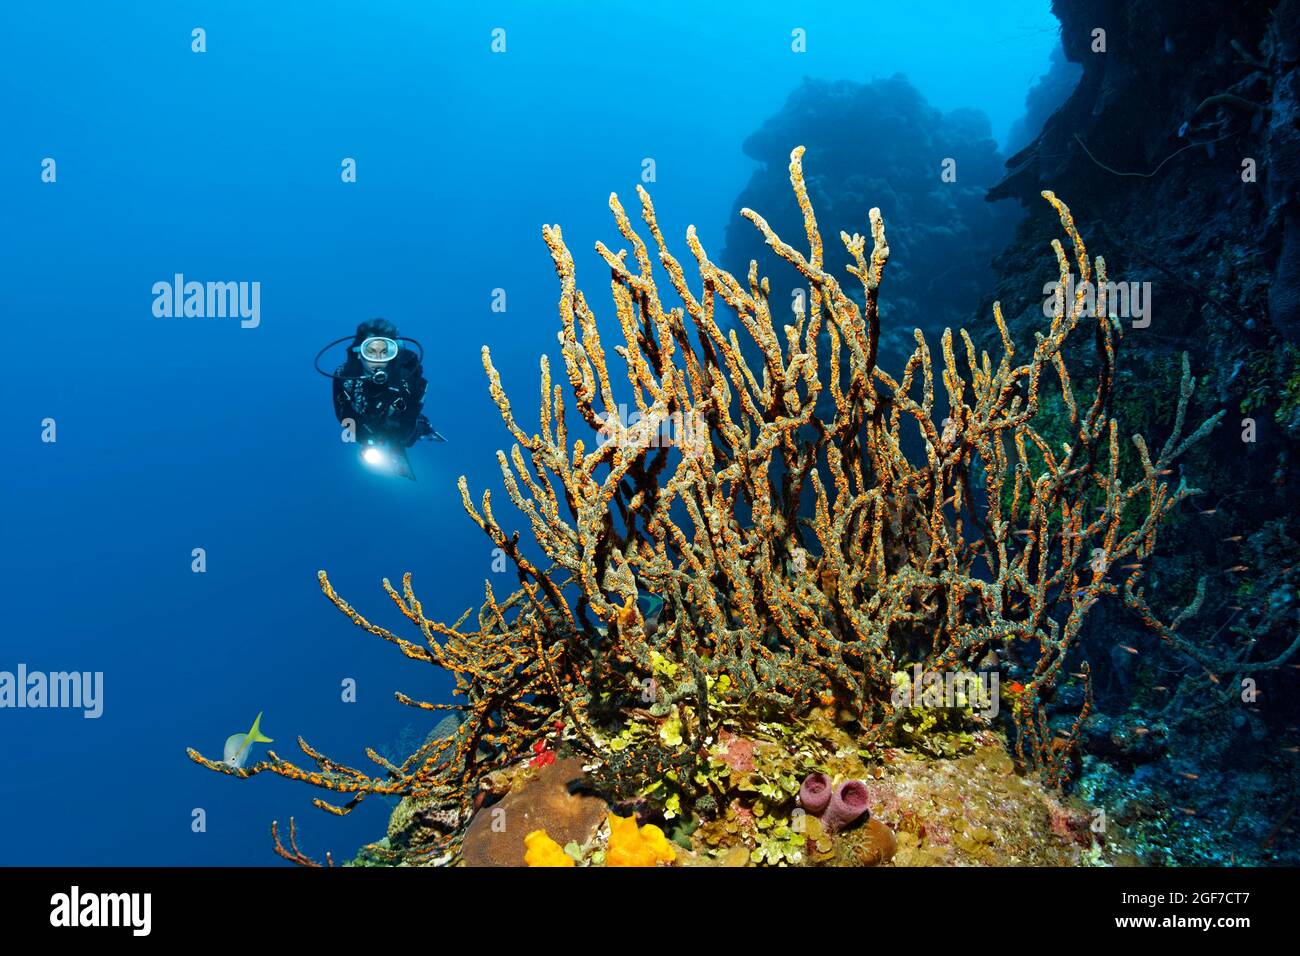 Subacqueo sulla parete della barriera corallina che guarda la spugna verde del dito (Lotrochota birotulata) con colonie di zoantidi dorati (Parazoanthus swiftii), Caraibi Foto Stock